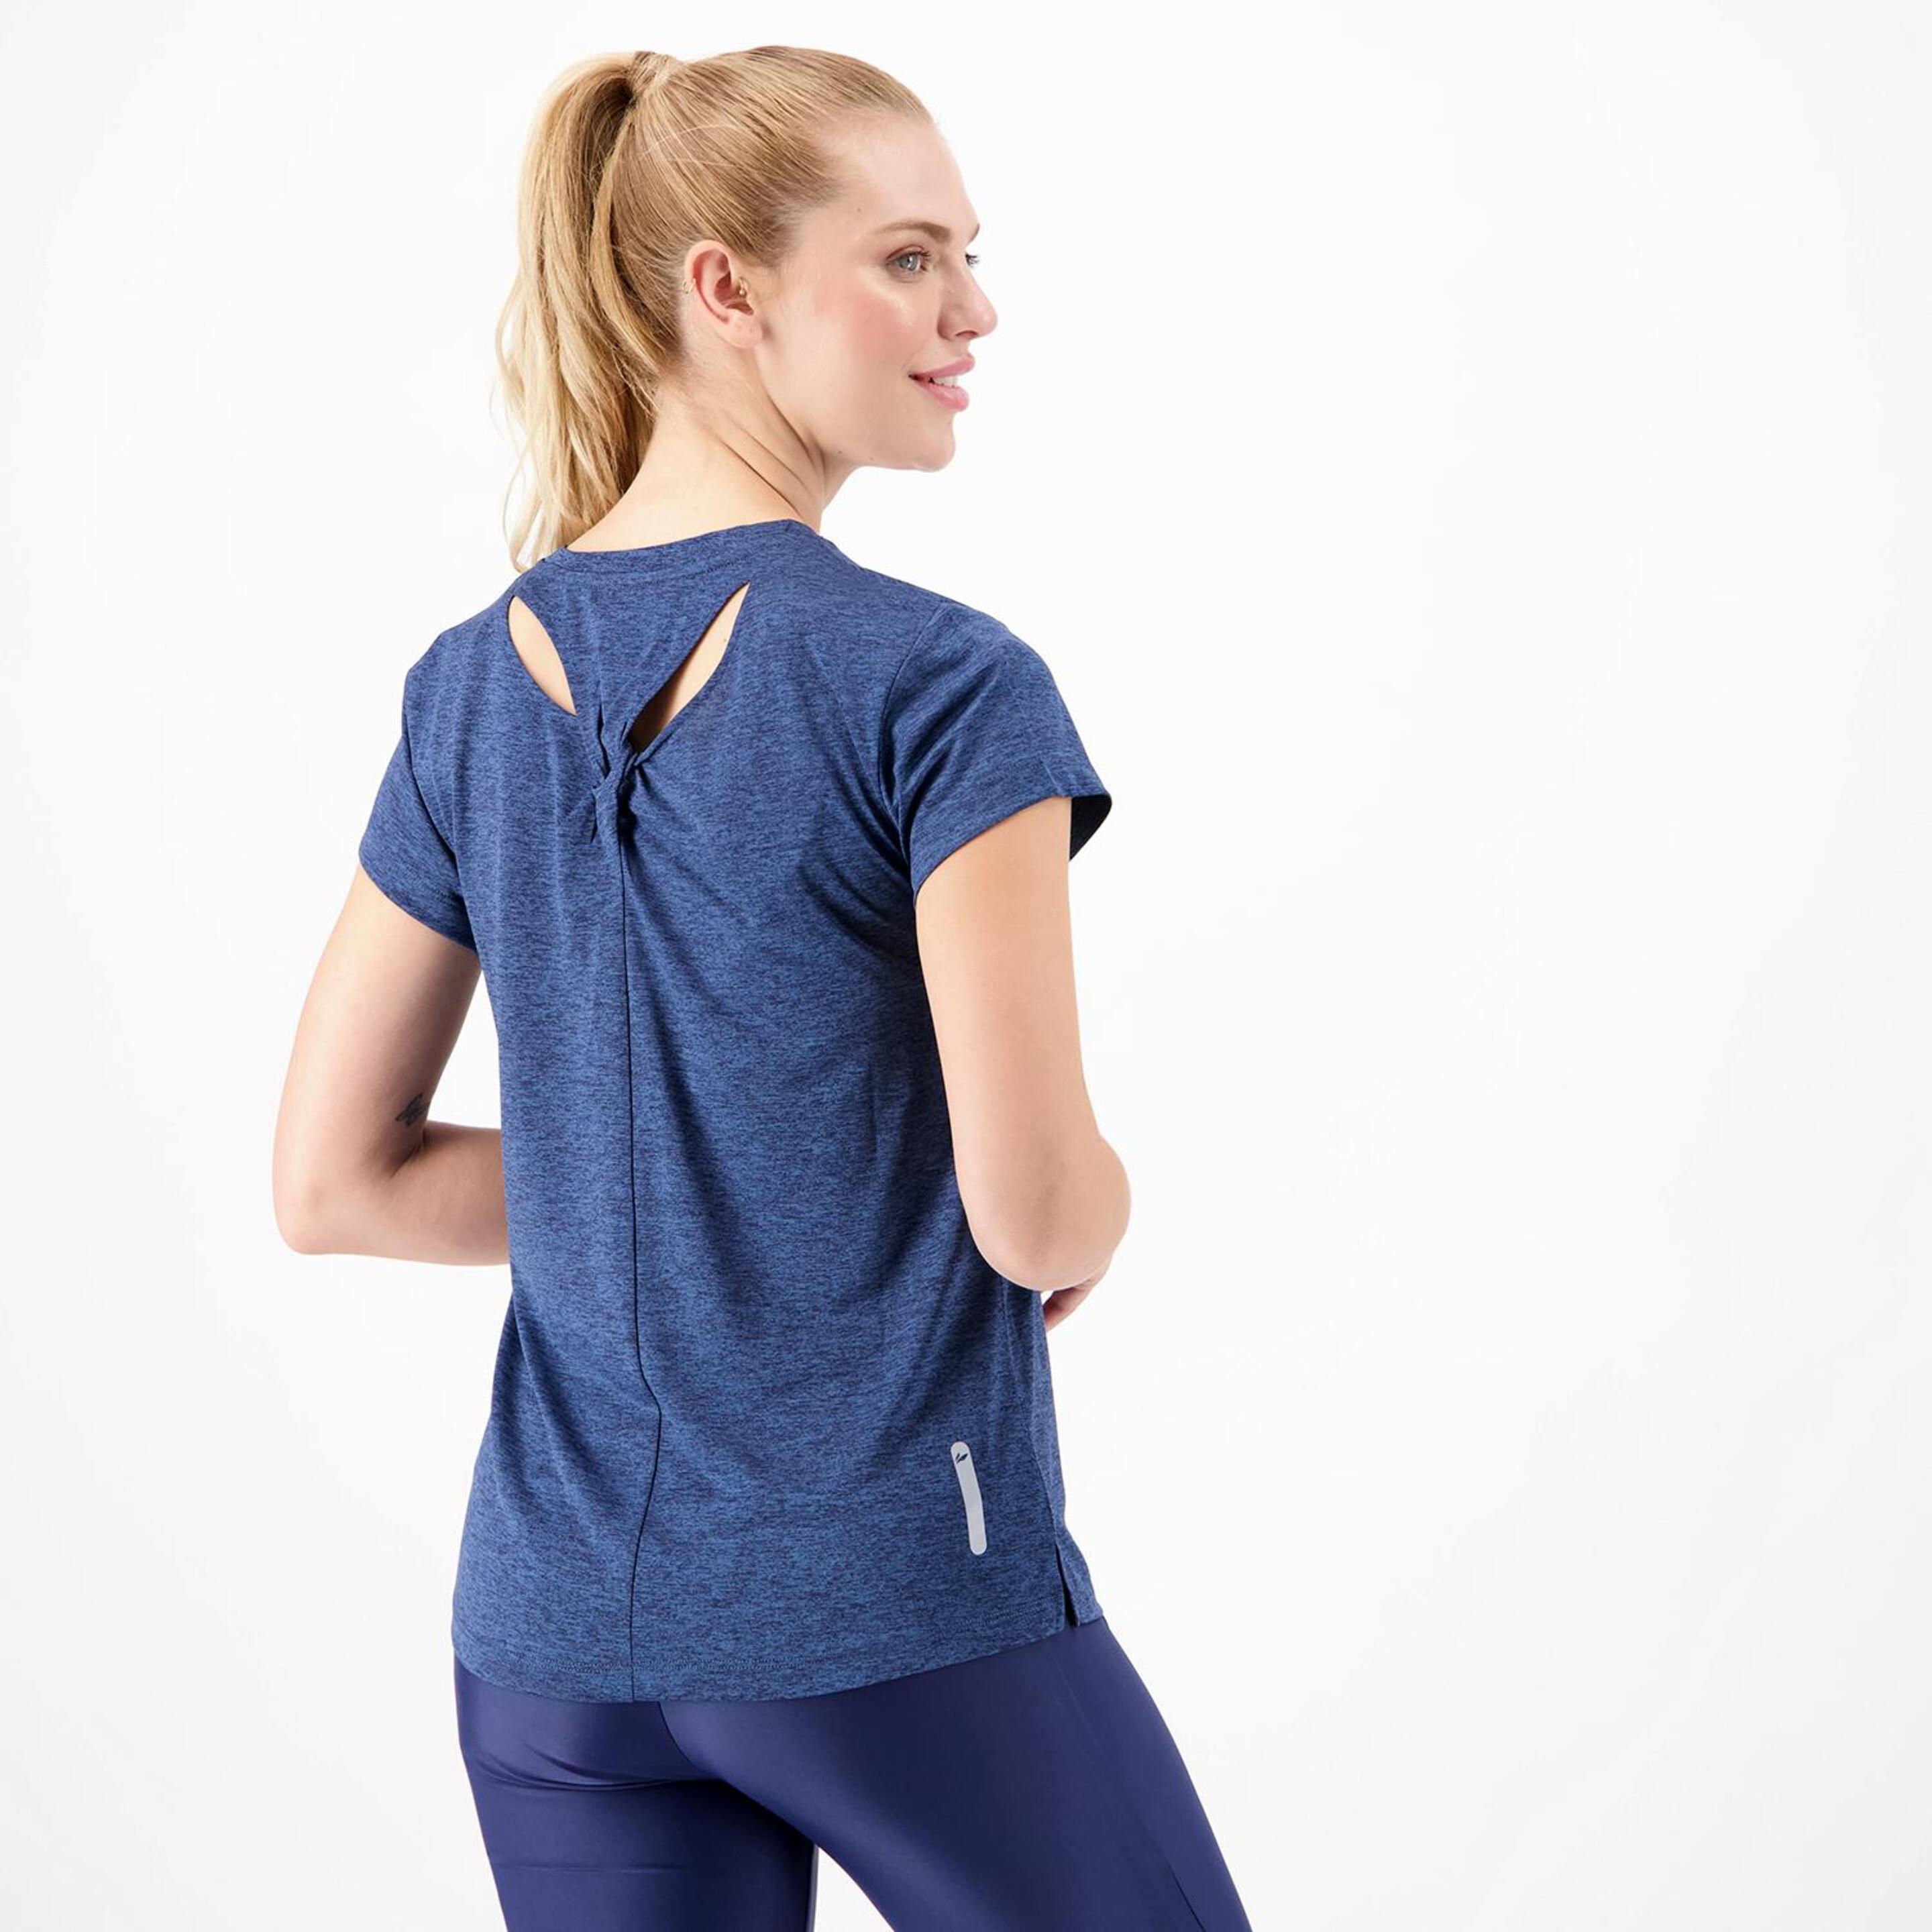 Ipso Combi - Marino - Camiseta Running Mujer  | Sprinter